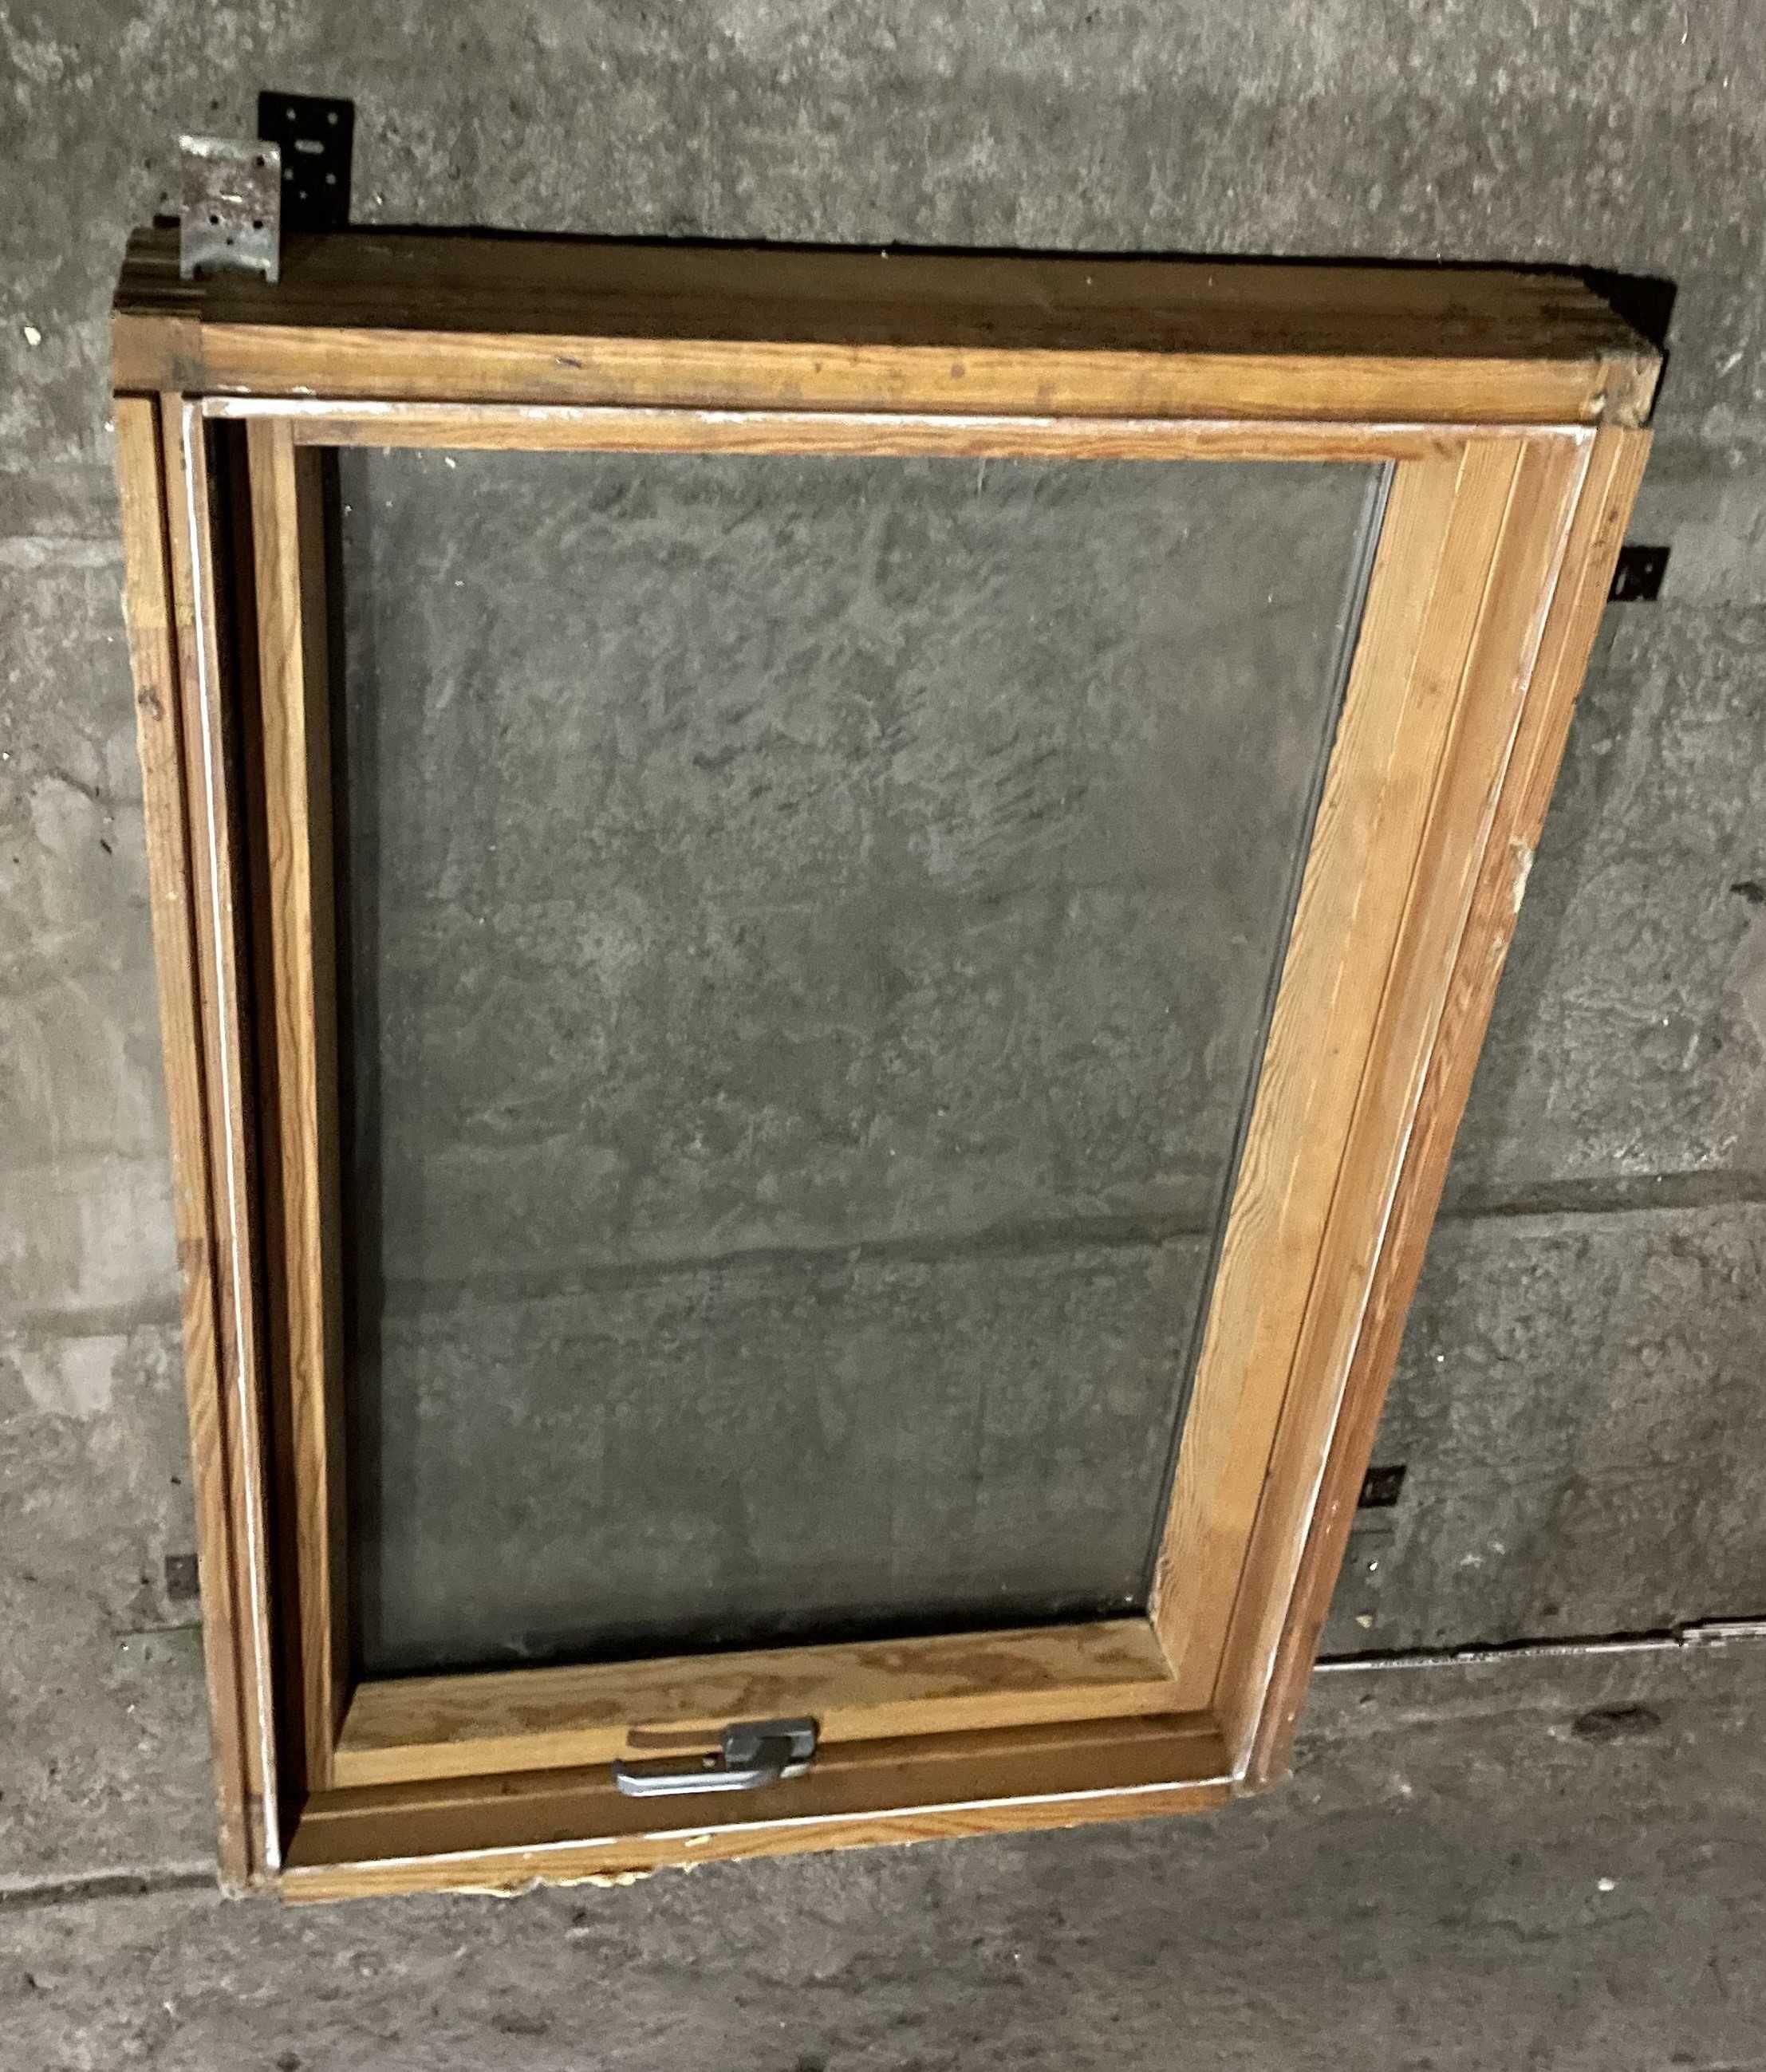 okno dachowe fakro drewniane kompletne 120x78cm kompletne opierzeniem